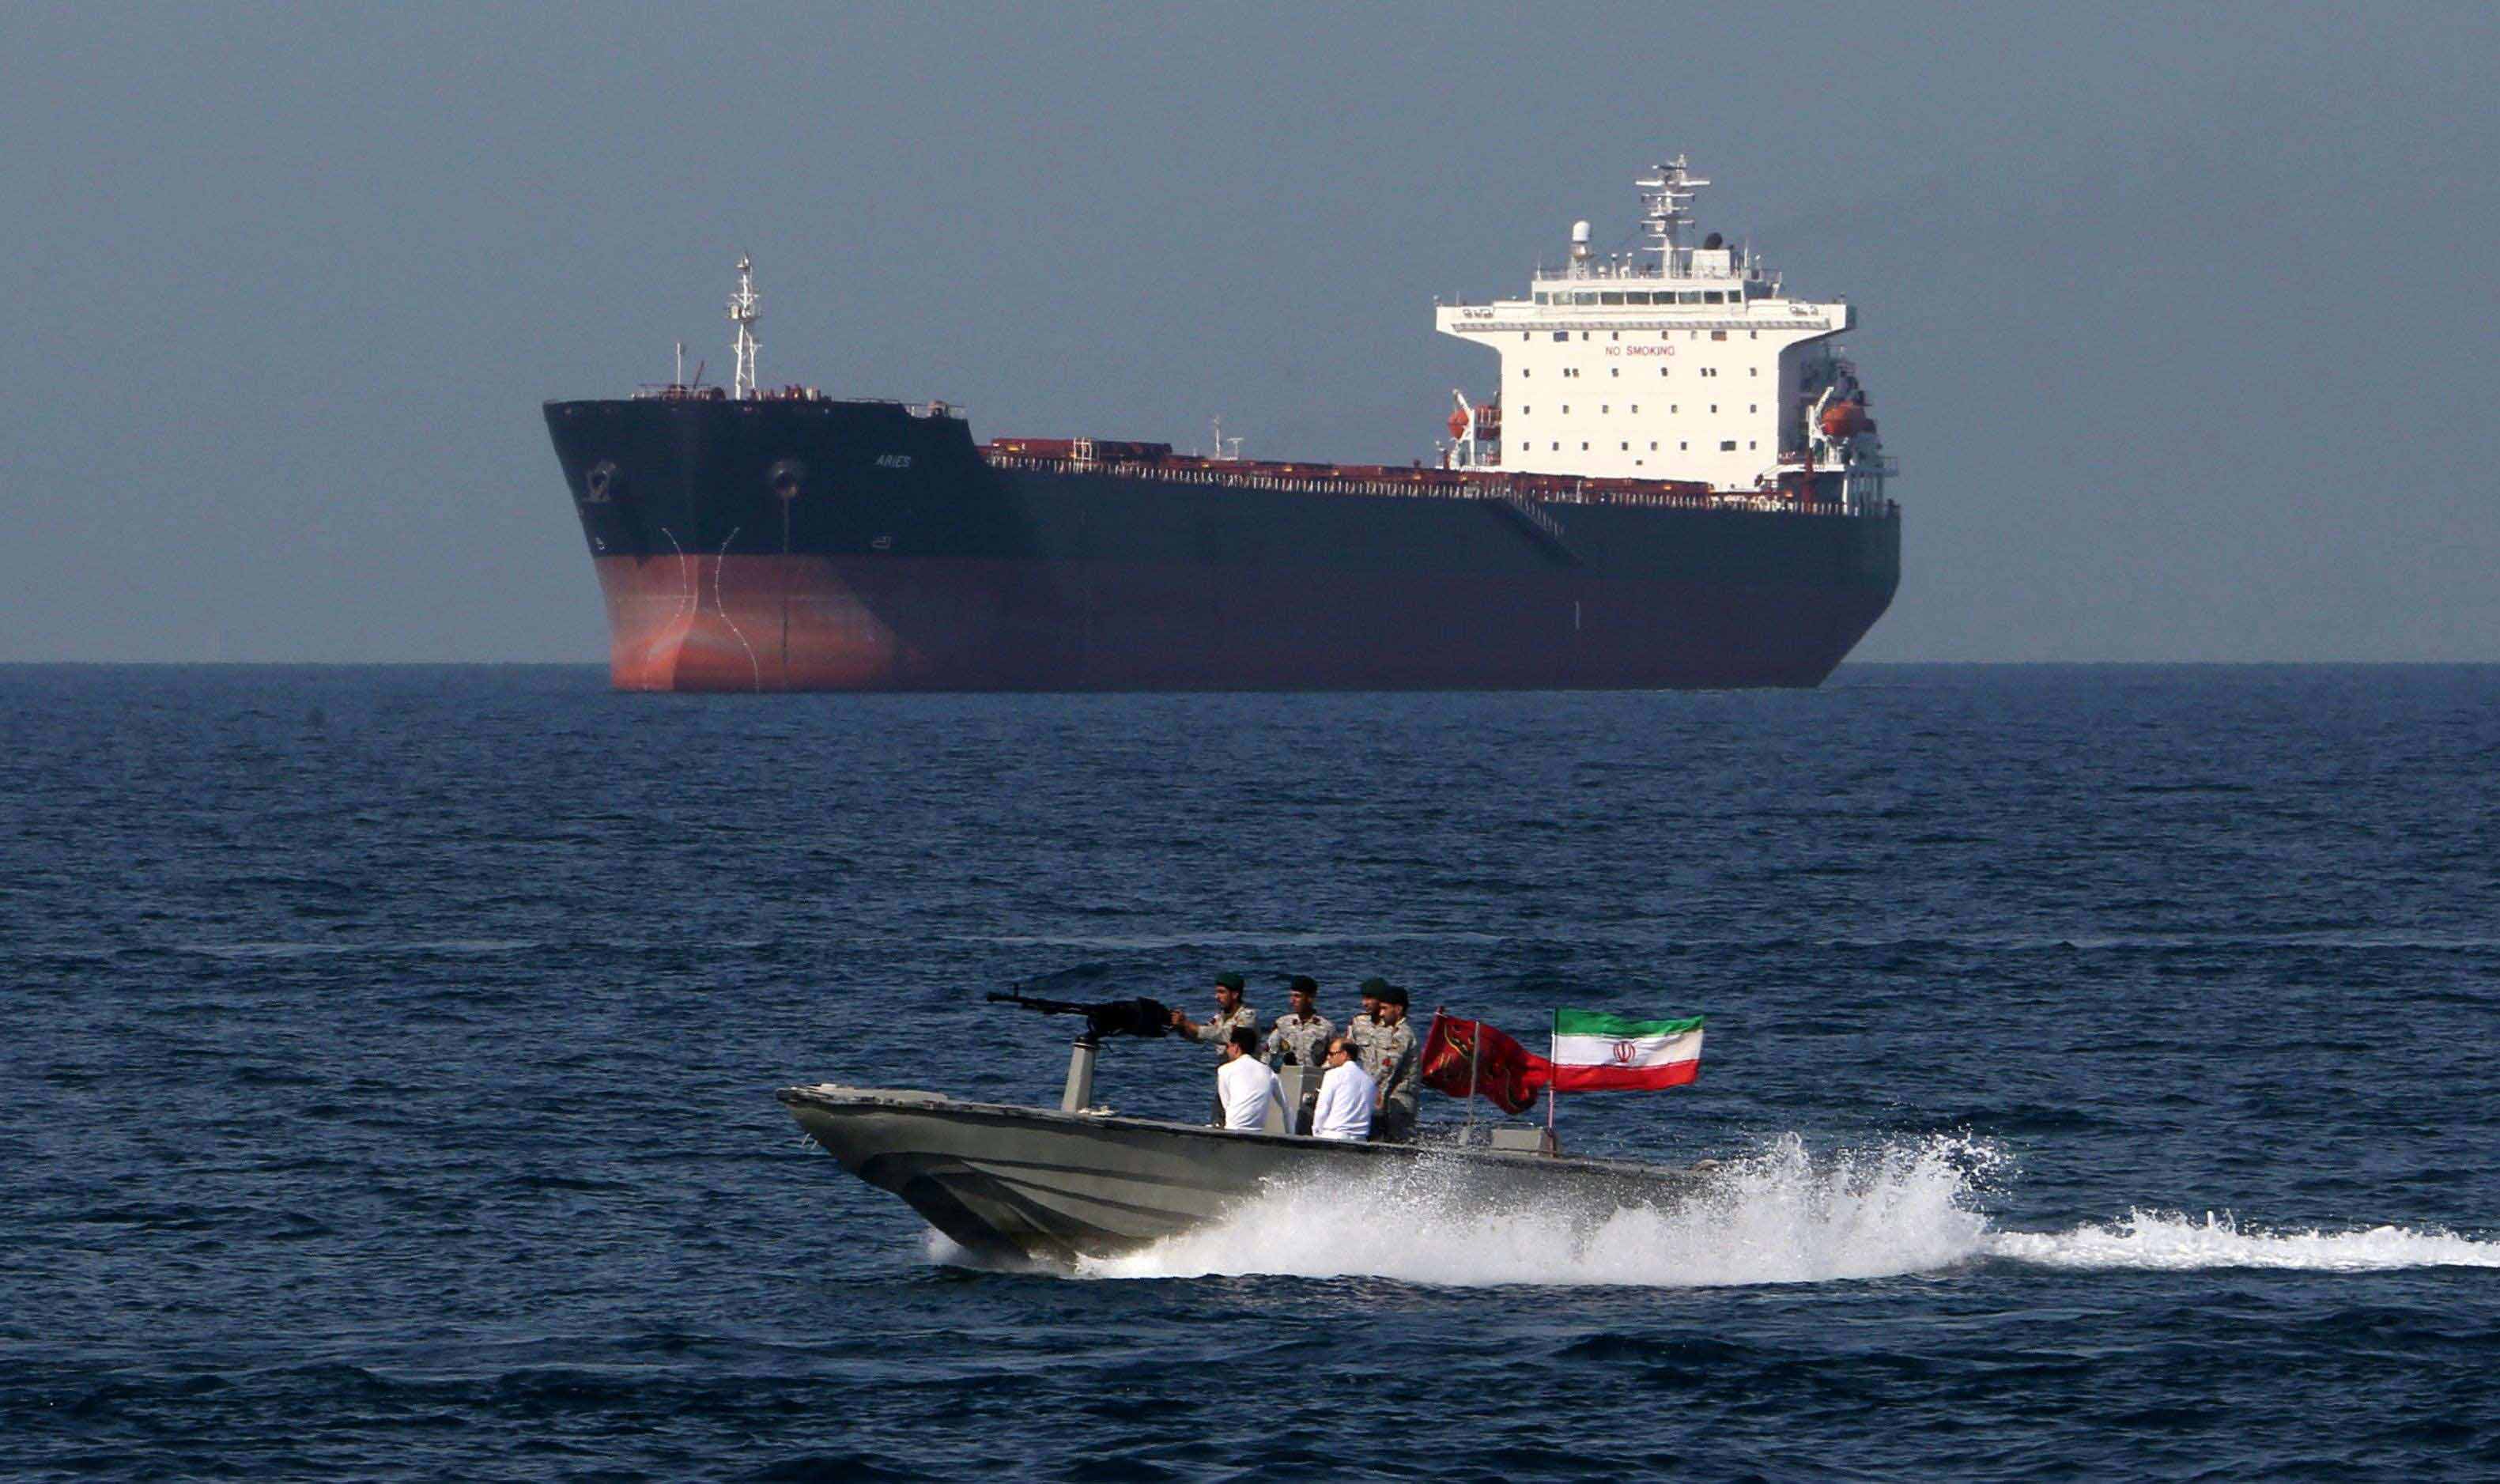 النظام الإيراني يعمل على تقويض الاستقرار الإقليمي والدولي عبر ميليشياته في المنطقة